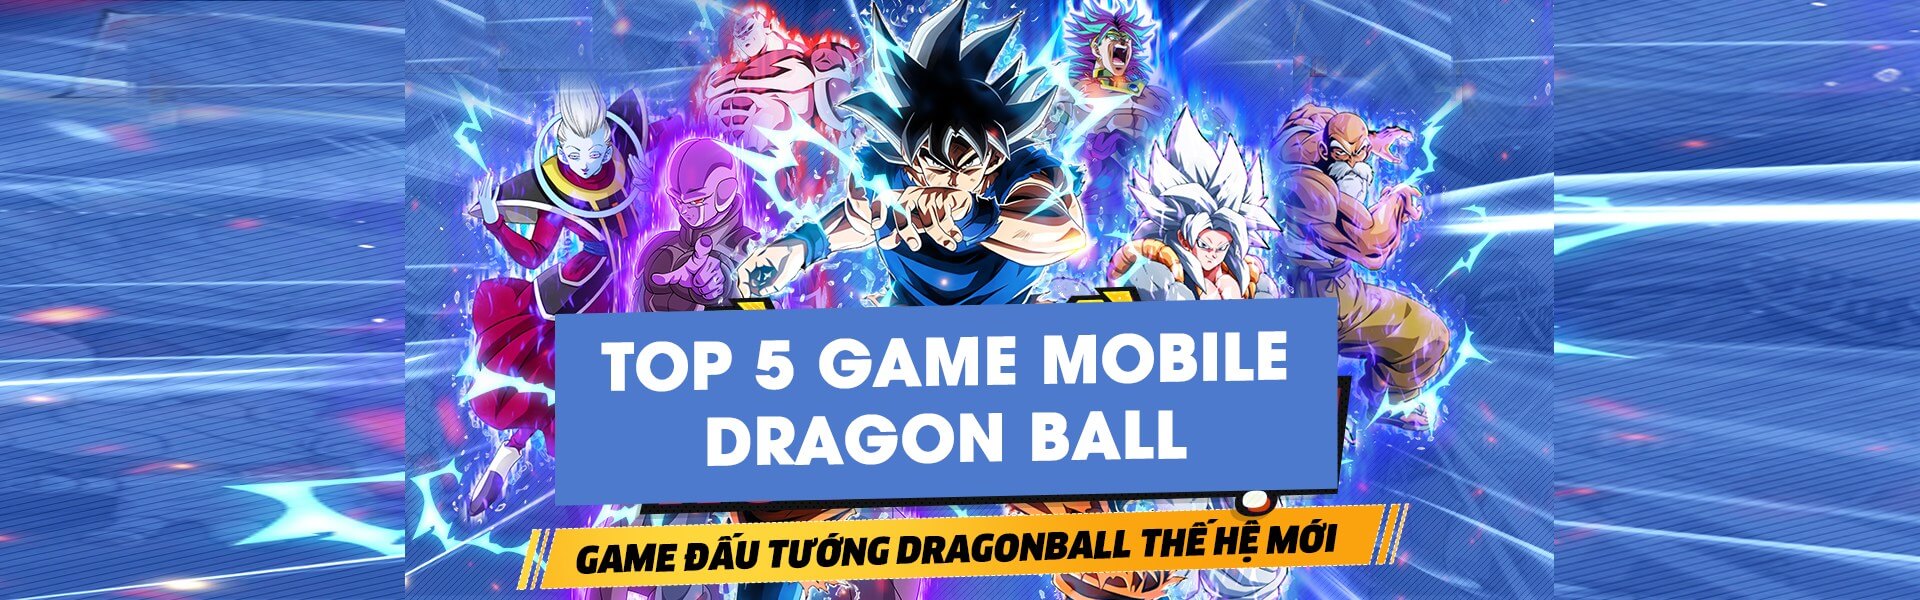 Top 5 game mobile Dragon Ball làm mưa làm gió giới game Việt